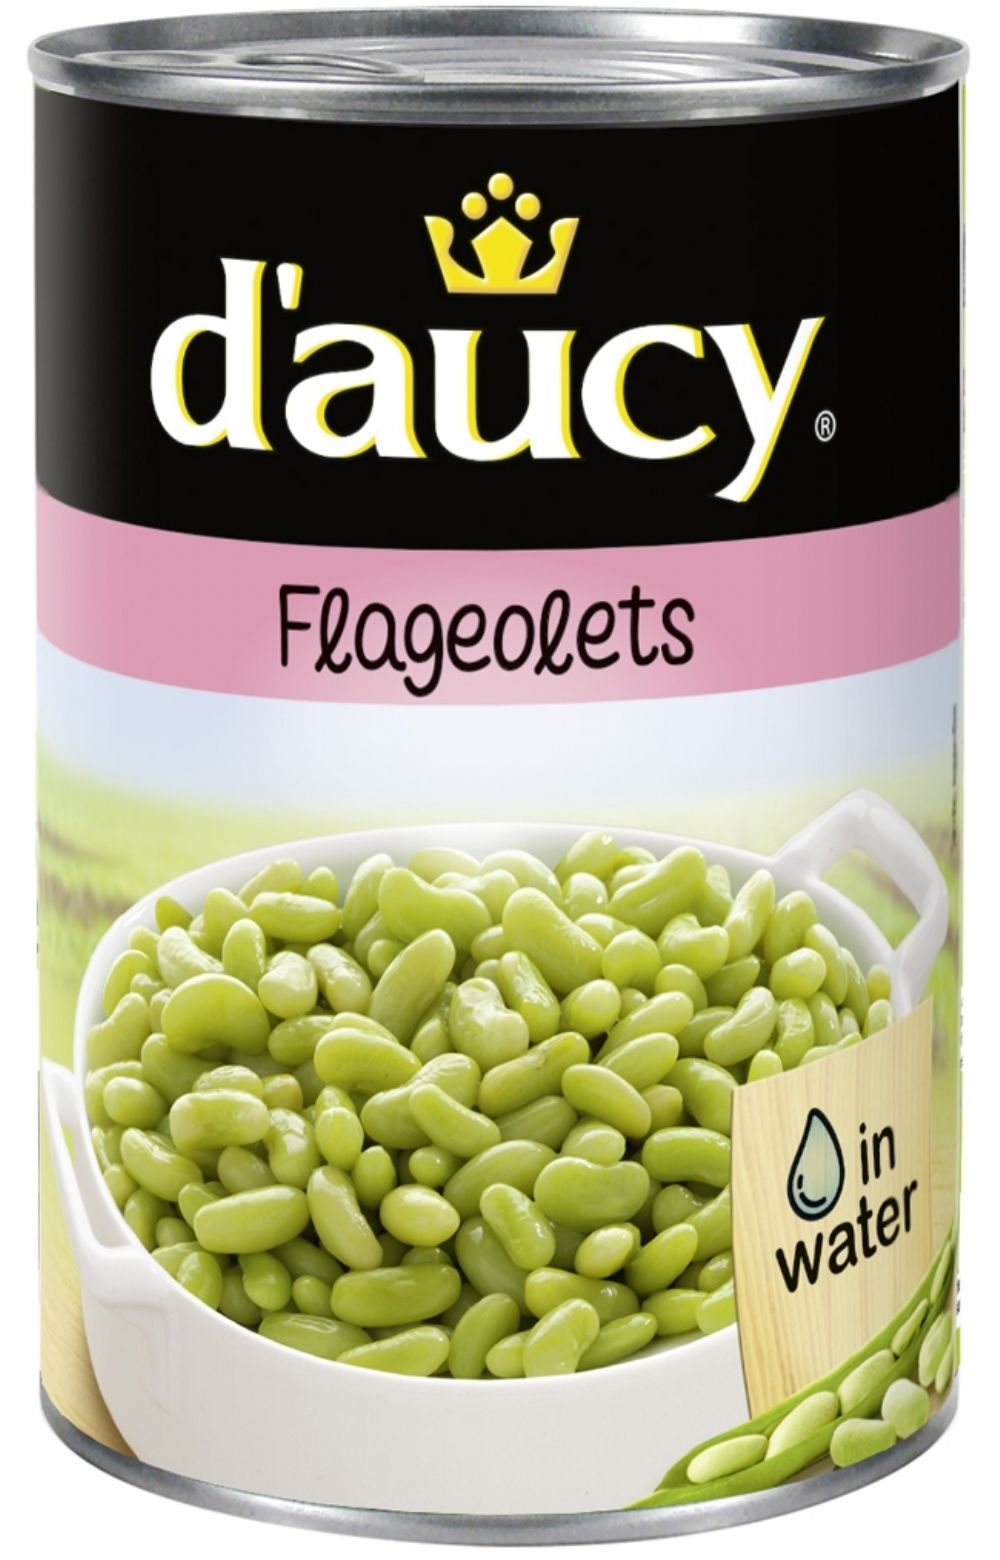 D'Aucy Green Flageolet Beans